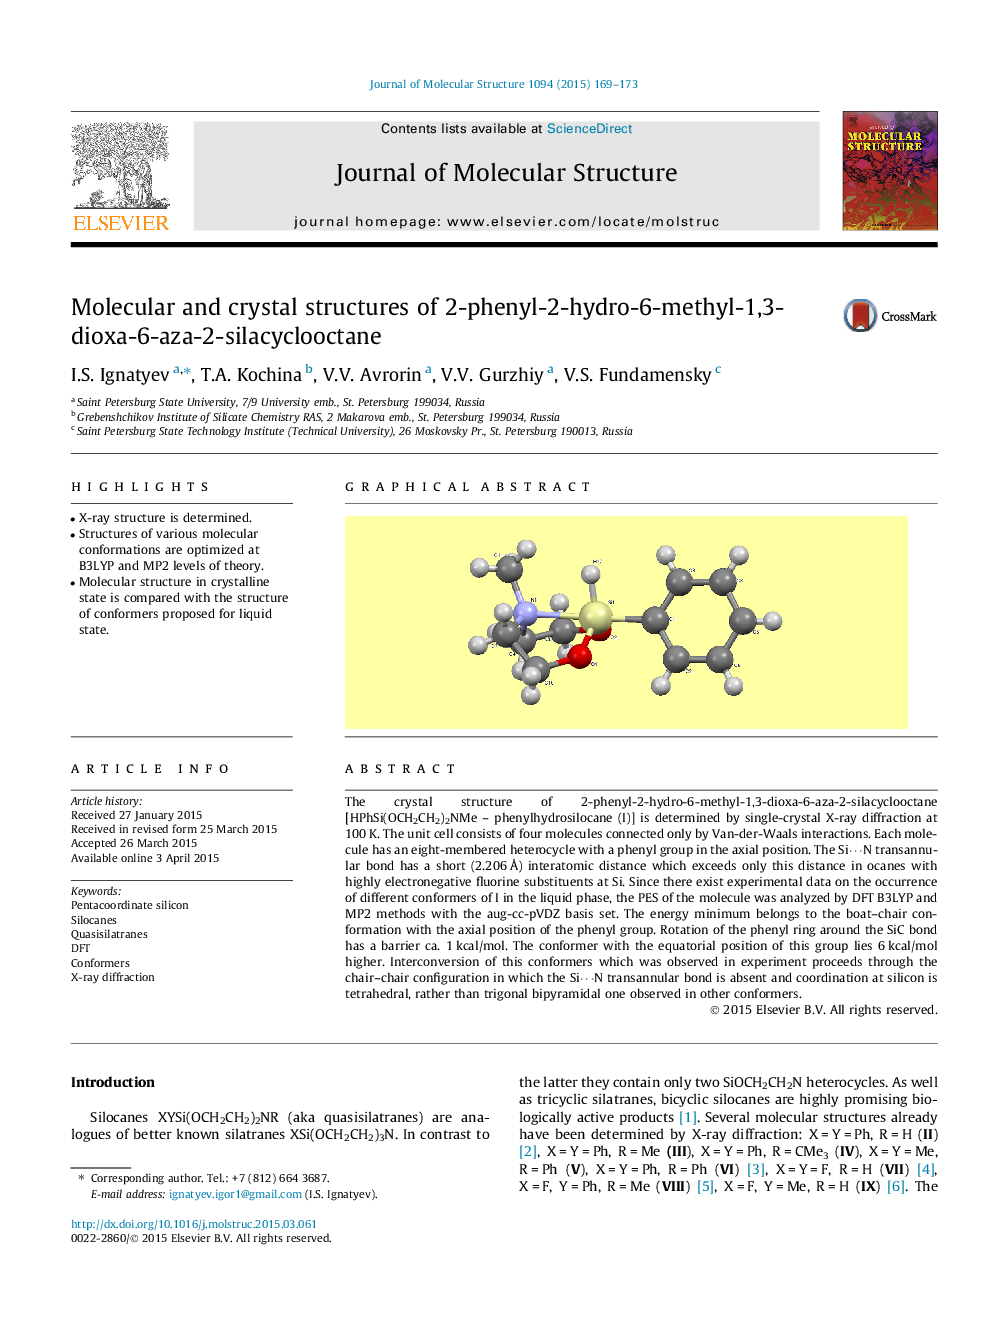 ساختارهای مولکولی و کریستالی 2-فنیل-2-هیدروکسی 6-متیل 1،3-دیوکسا-6-آزا-2-سیلاسیکلووکتان 